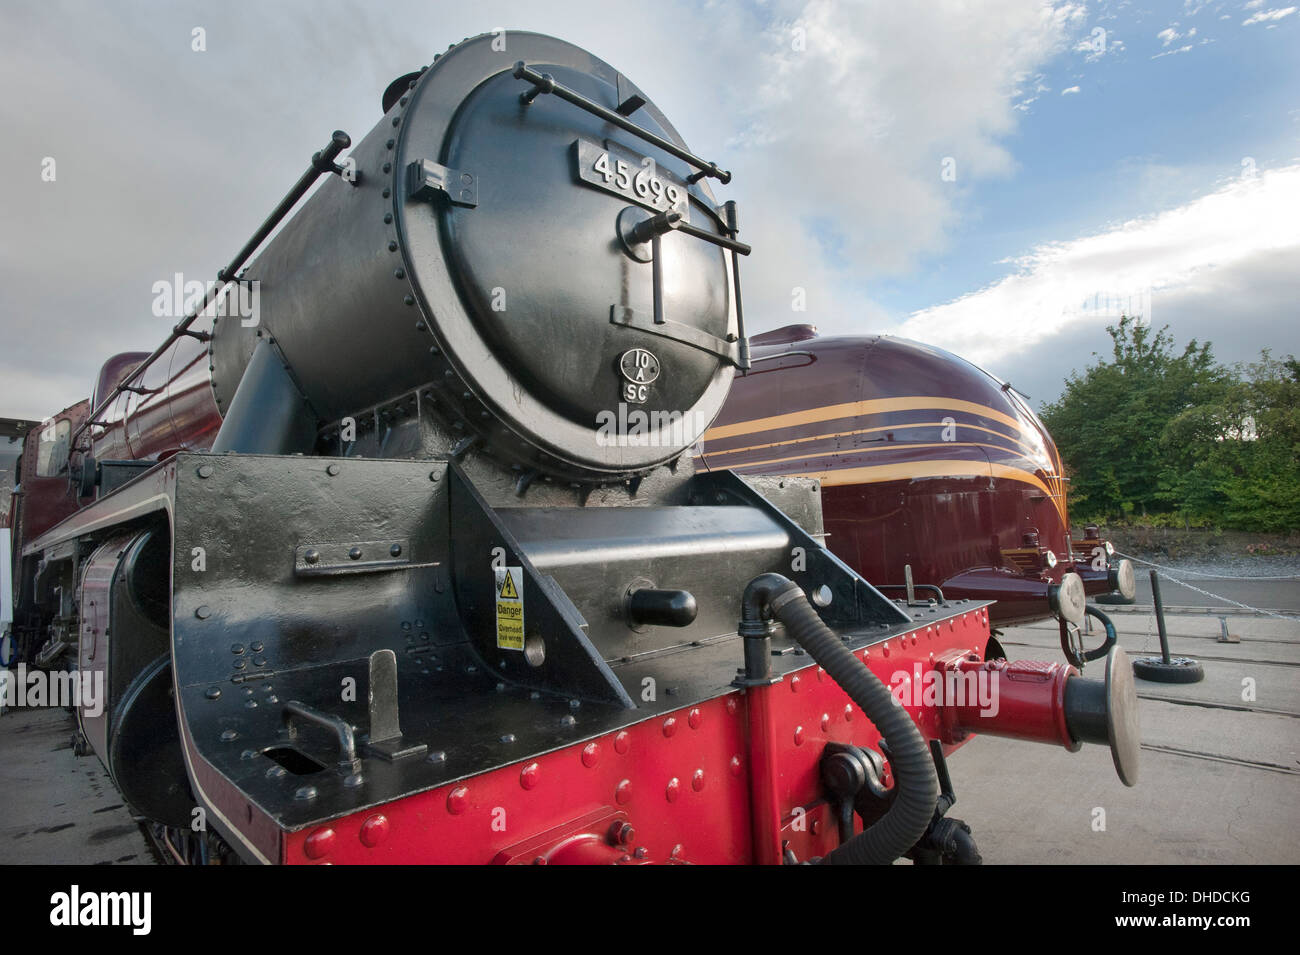 Presso il museo nazionale delle ferrovie, Shildon, due locomotive a vapore, uno ottimizzato e uno nella sua forma originale. Foto Stock